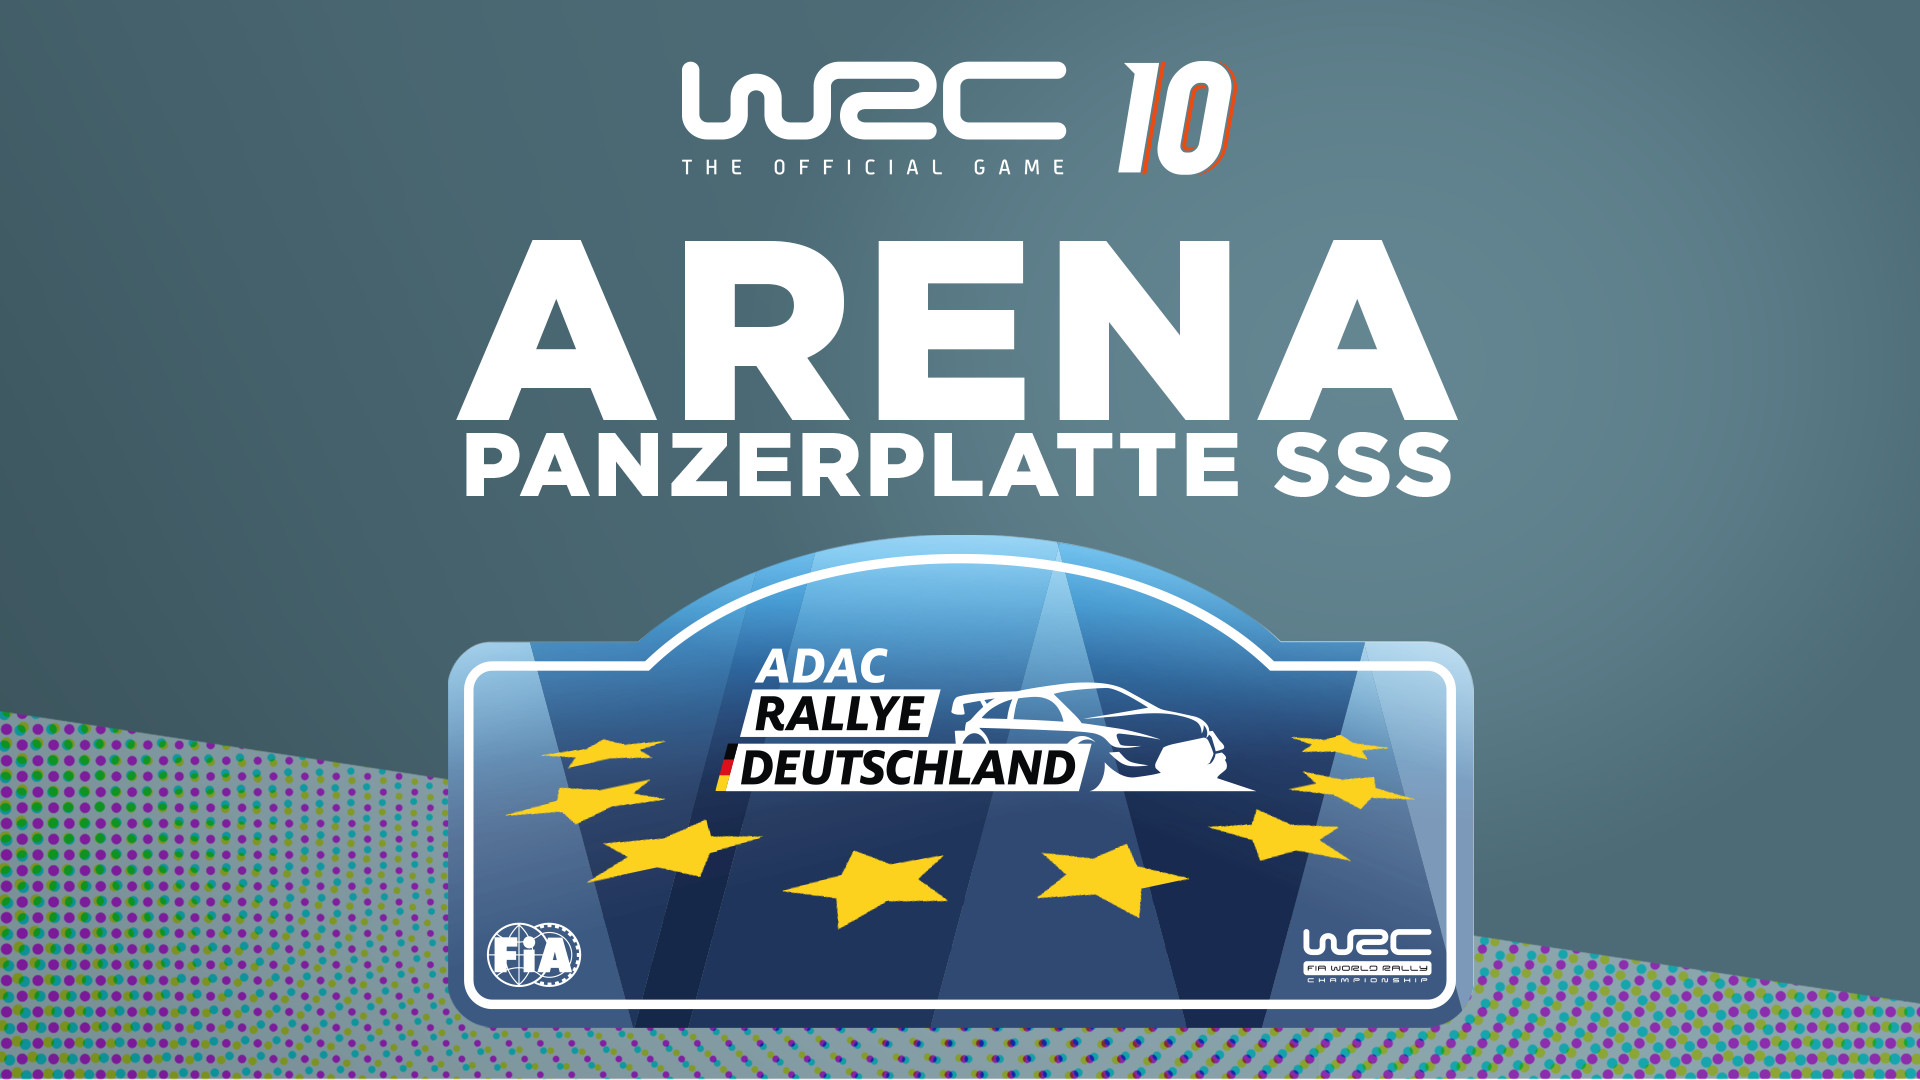 WRC 10 - Arena Panzerplatte SSS DLC Steam CD Key